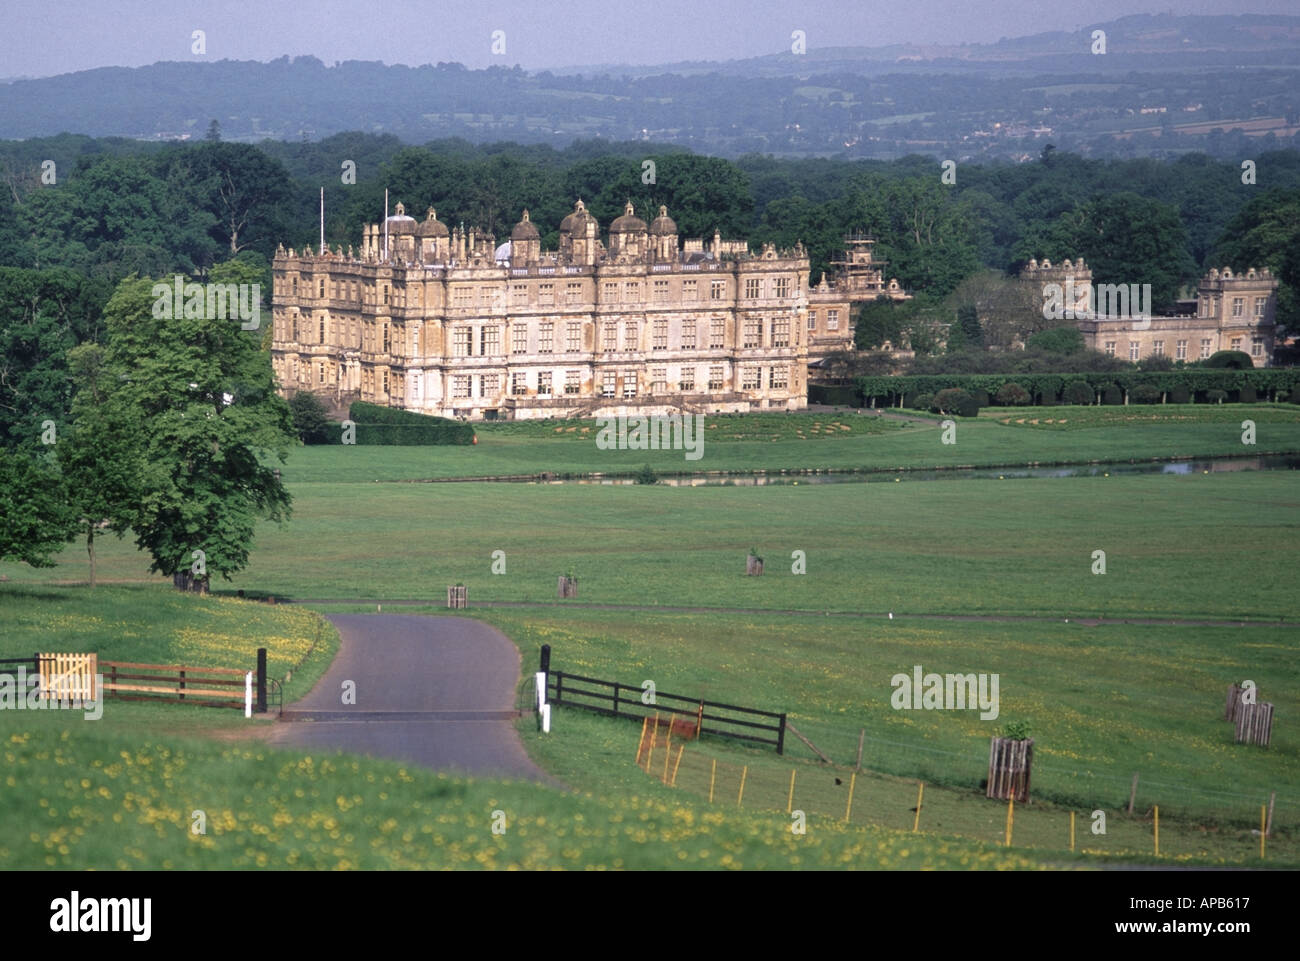 La tenuta di campagna e Manor House di Longleat posseduti dal marchese di Bath discendente della famiglia Thynne Longleat vicino Warminster Wiltshire, Inghilterra REGNO UNITO Foto Stock